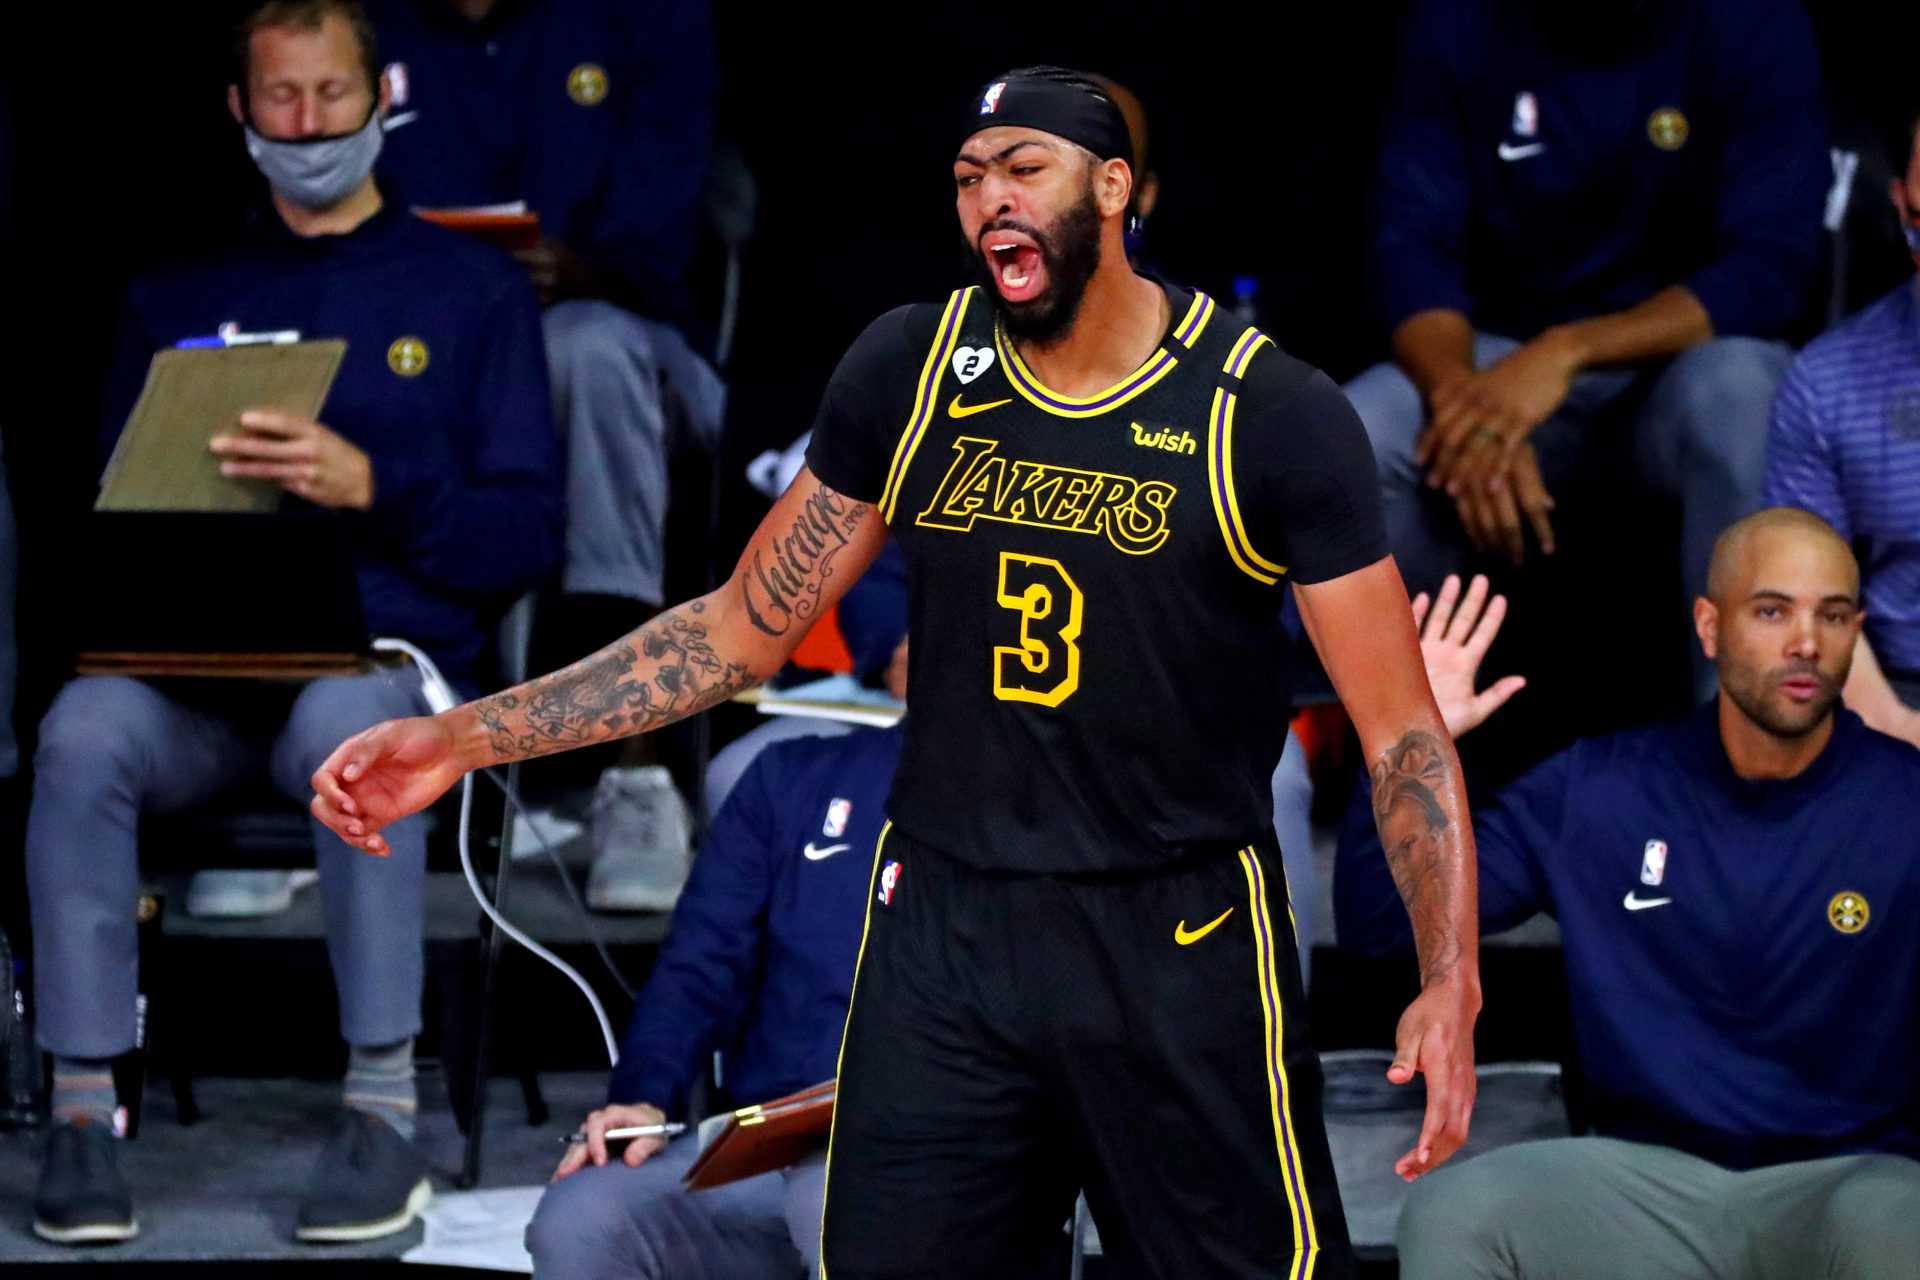 REGARDER: La ressemblance étrange entre Kobe Bryant des Lakers et les Buzzer Beaters d'Anthony Davis